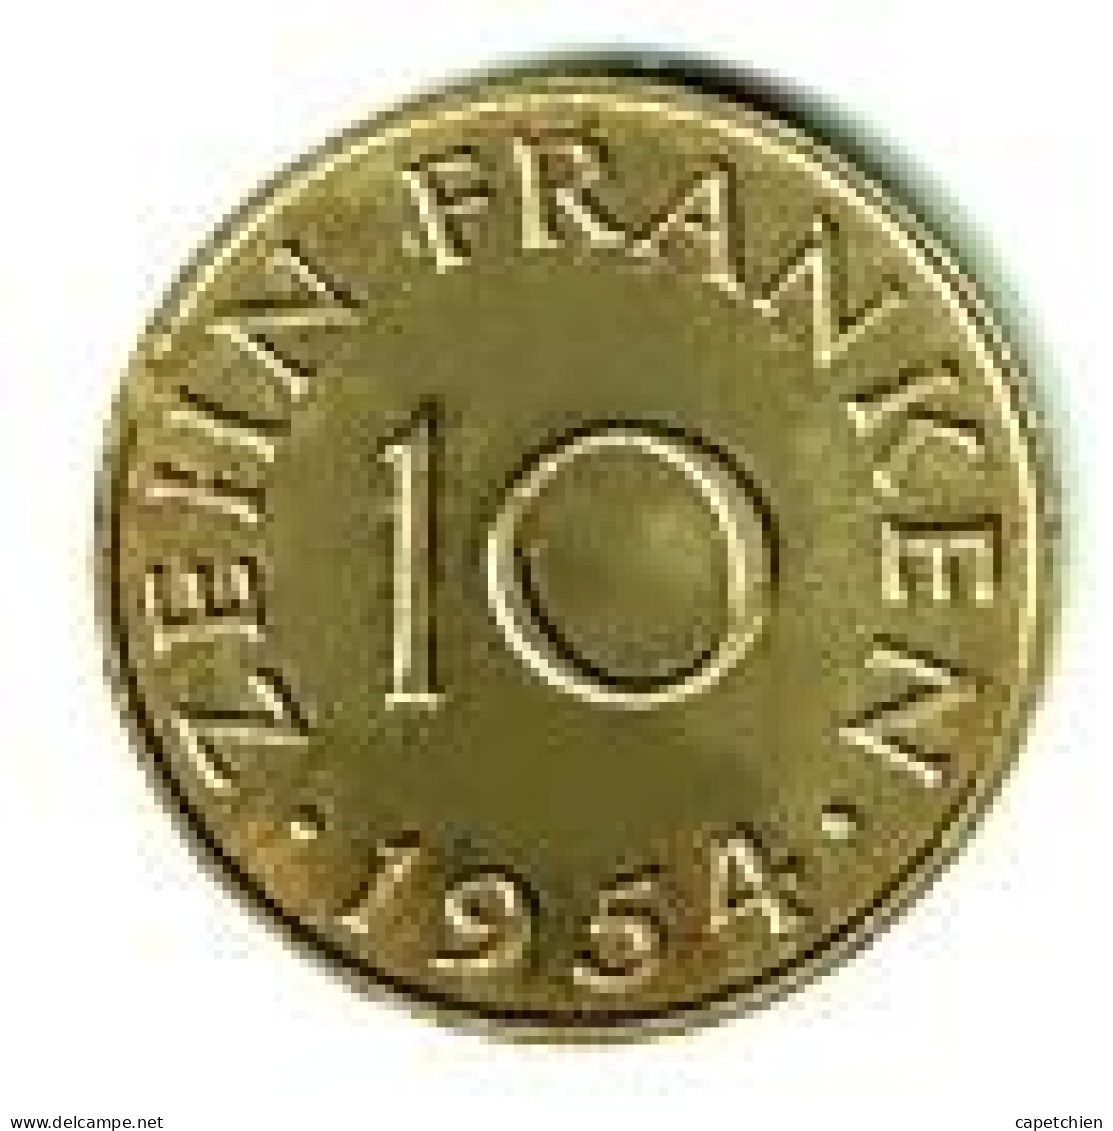 SAARLAND  / 10 FRANKEN / 1954 - 100 Franken